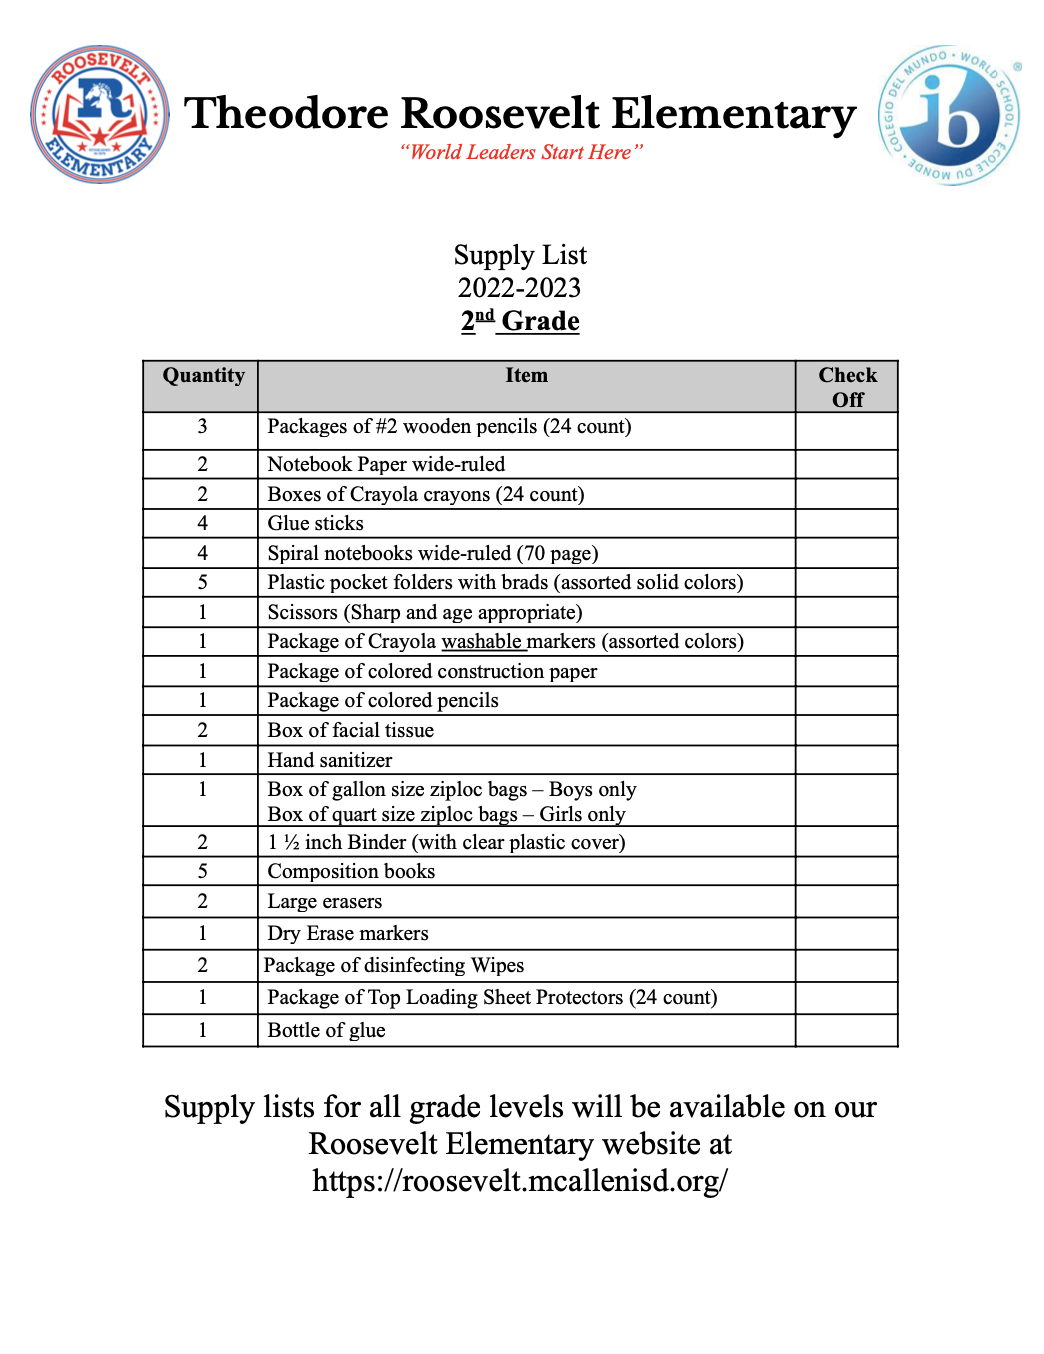 2nd grade supply list